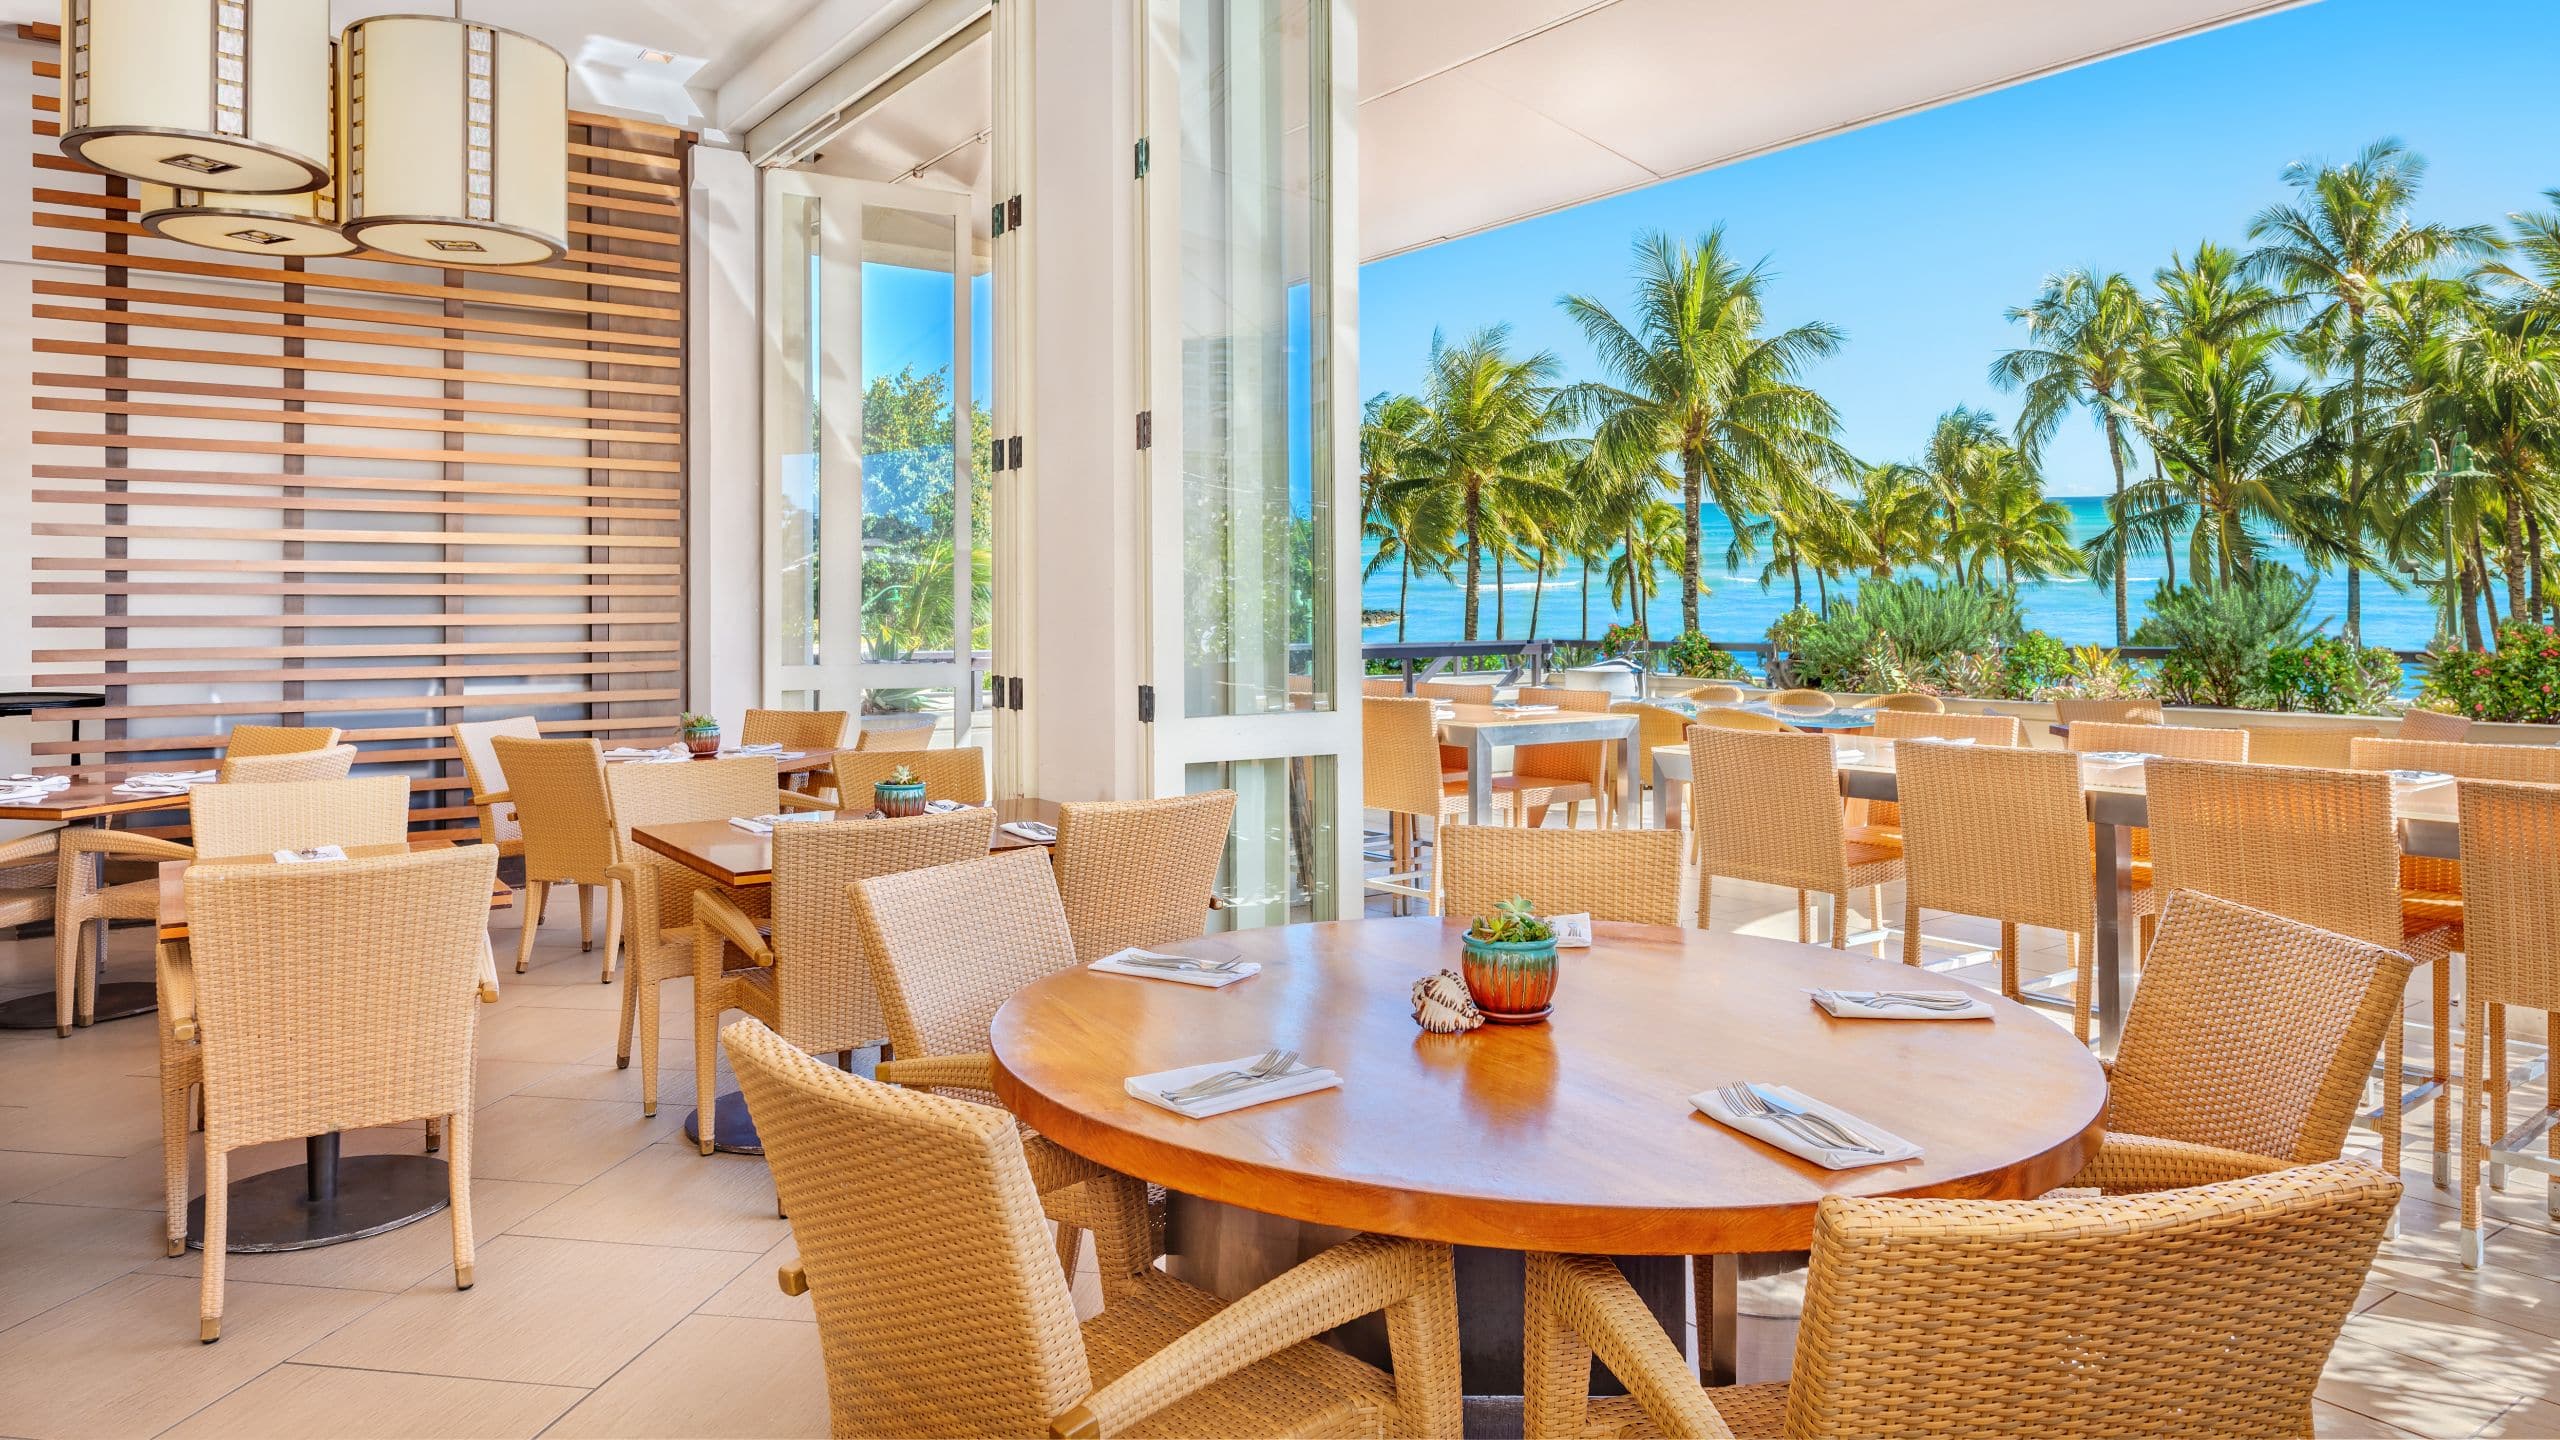 Waikiki Beach Restaurants | The Buffet at Hyatt